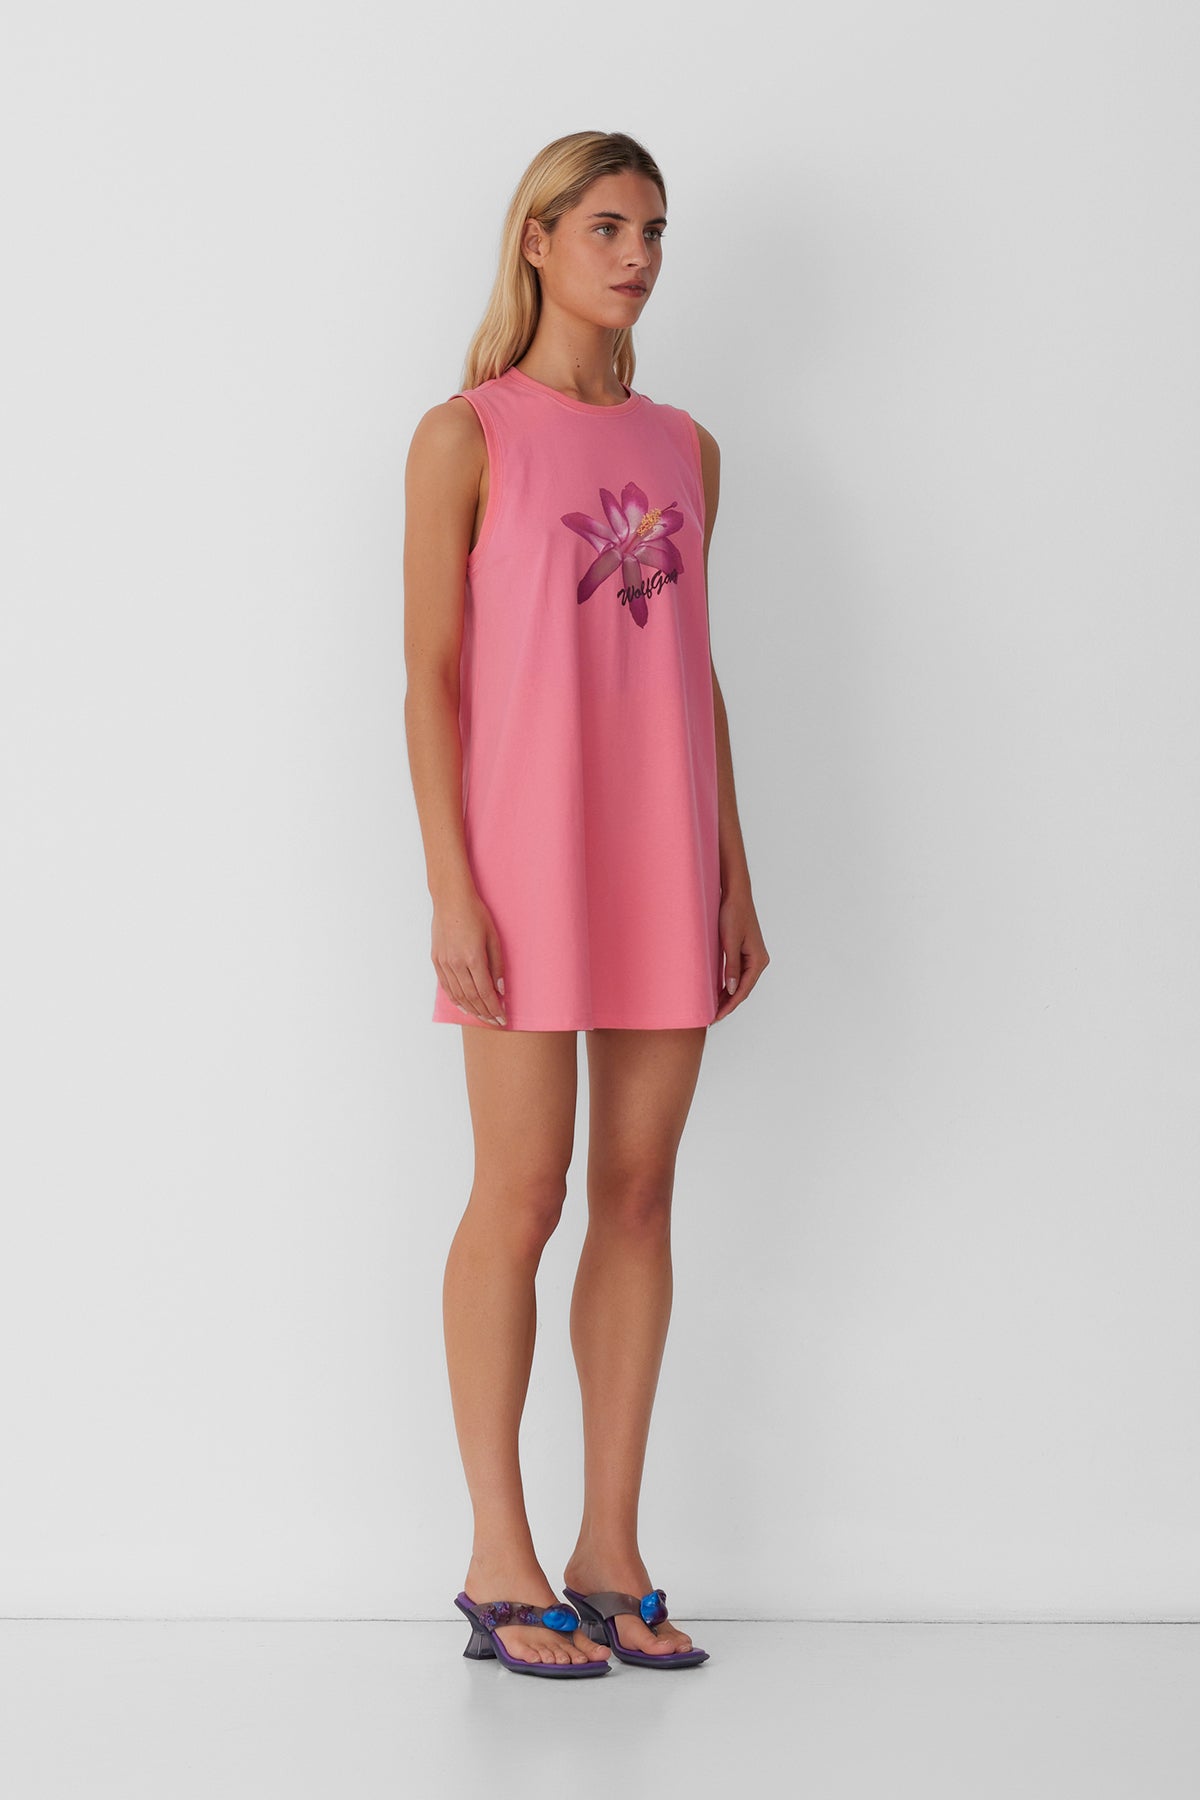 Florade T-shirt Dress - Candy